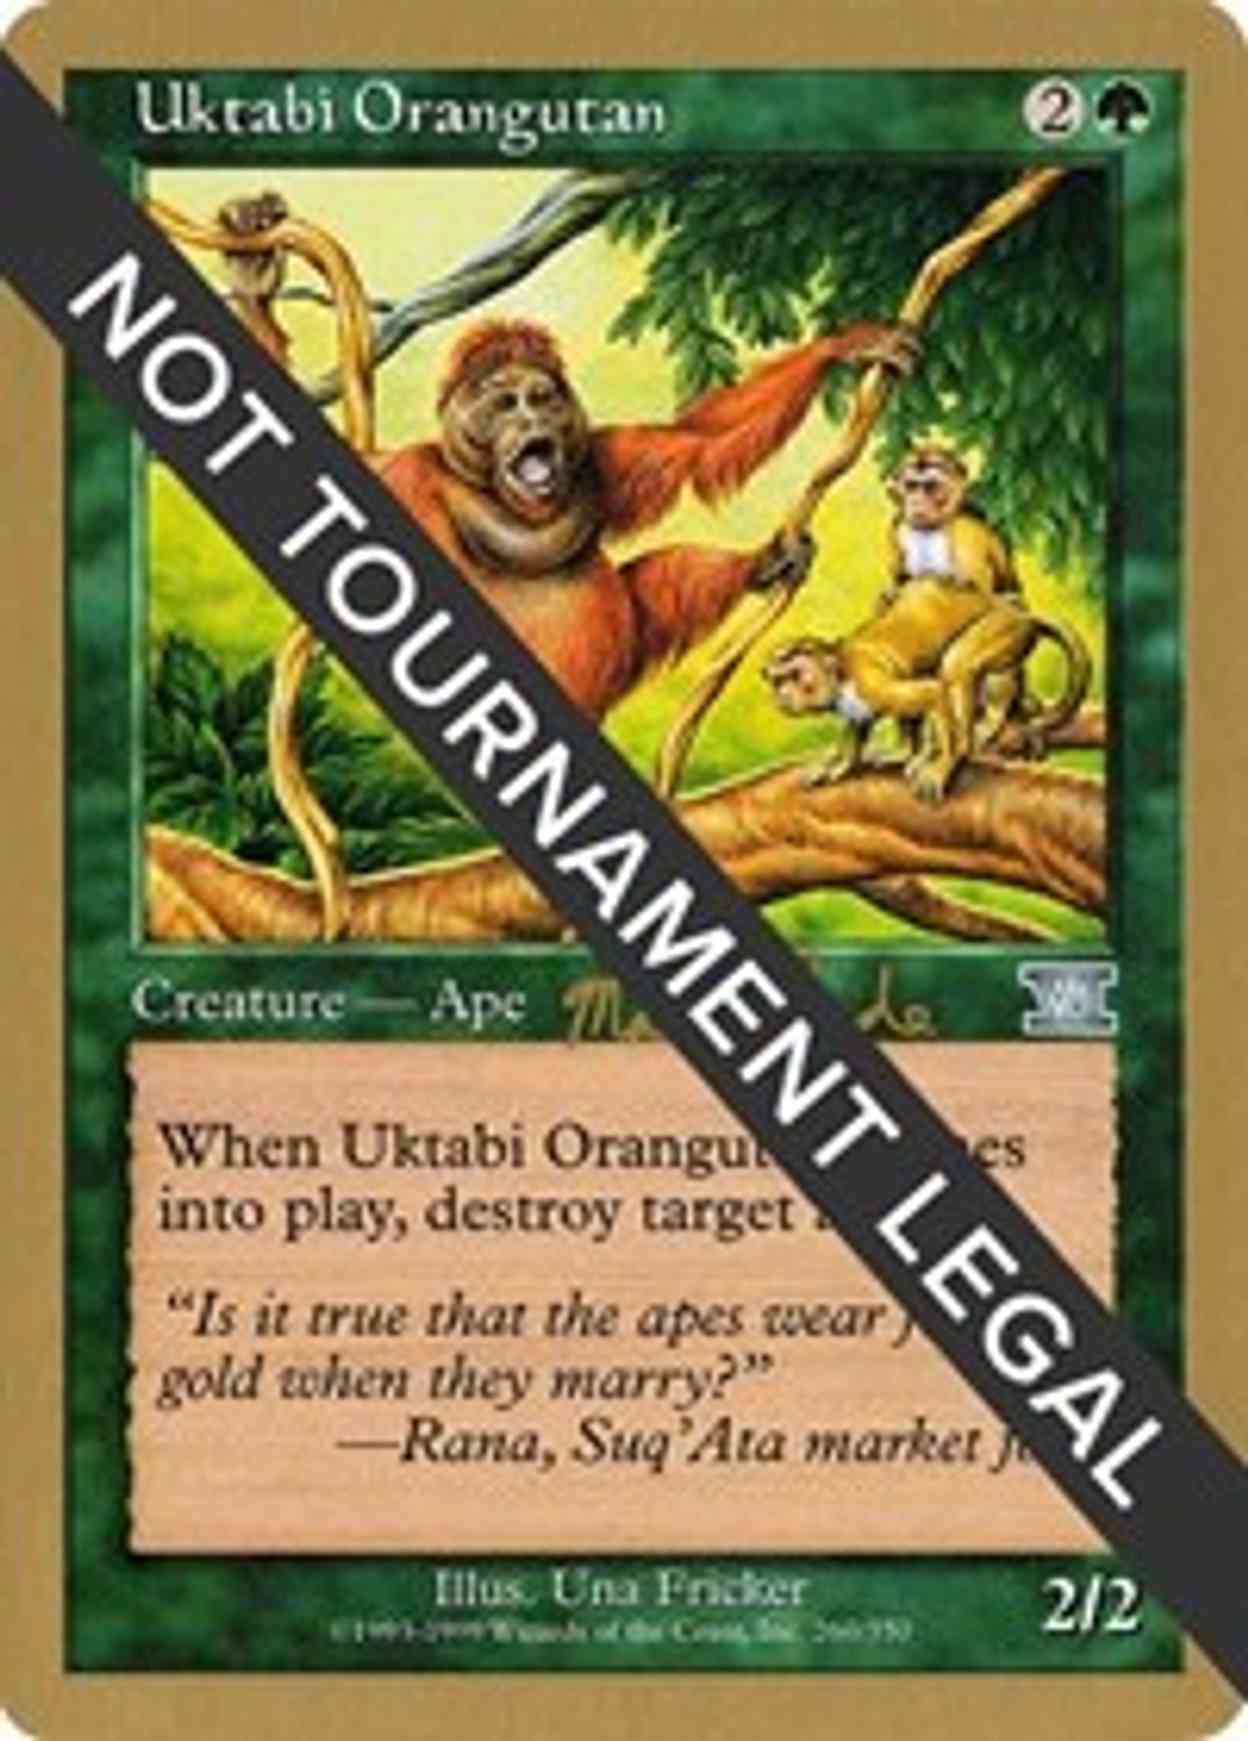 Uktabi Orangutan - 1999 Matt Linde (6ED) magic card front